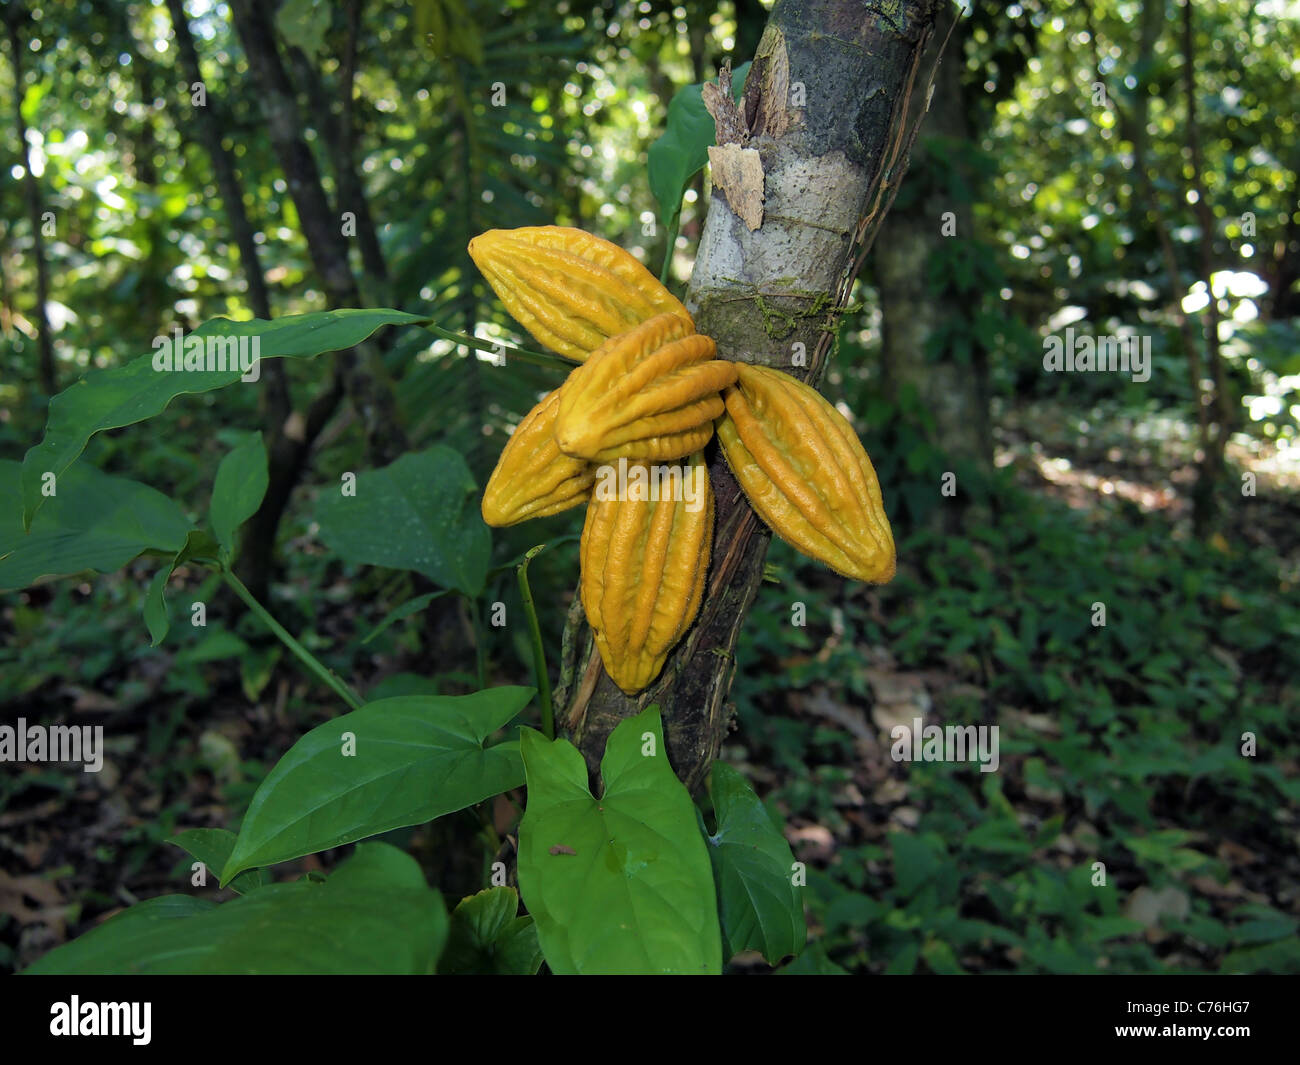 Wild cocoa pods on a tree in the jungle, Bocas del Toro, Caribbean, Panama Stock Photo